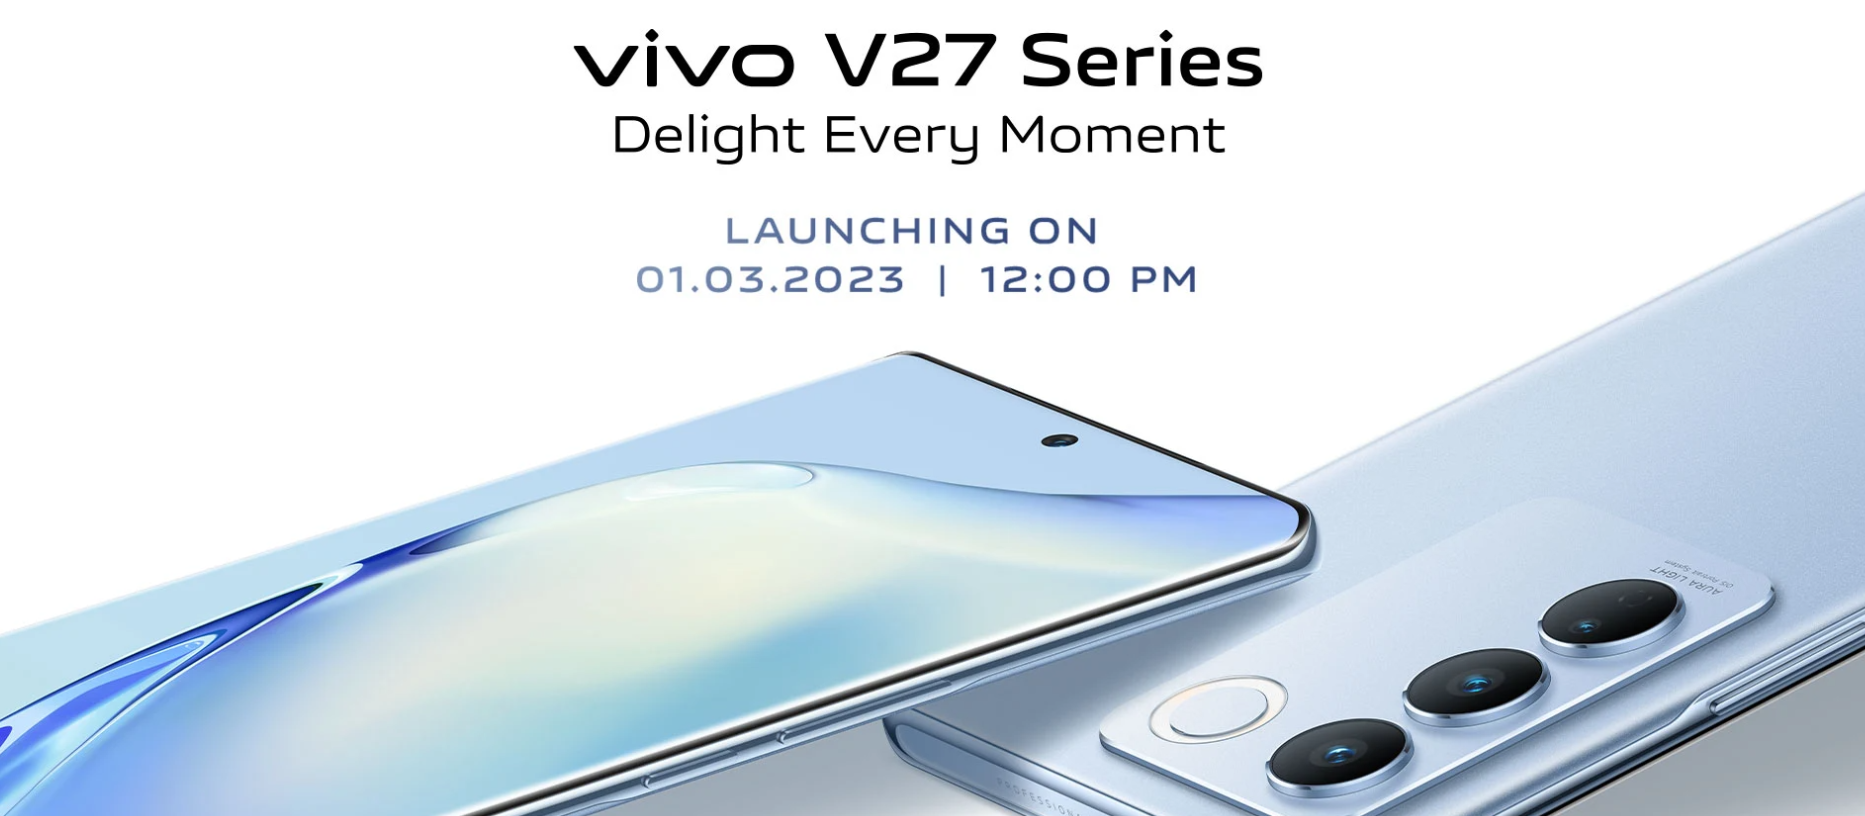 Vivo V27 Series Launch in India